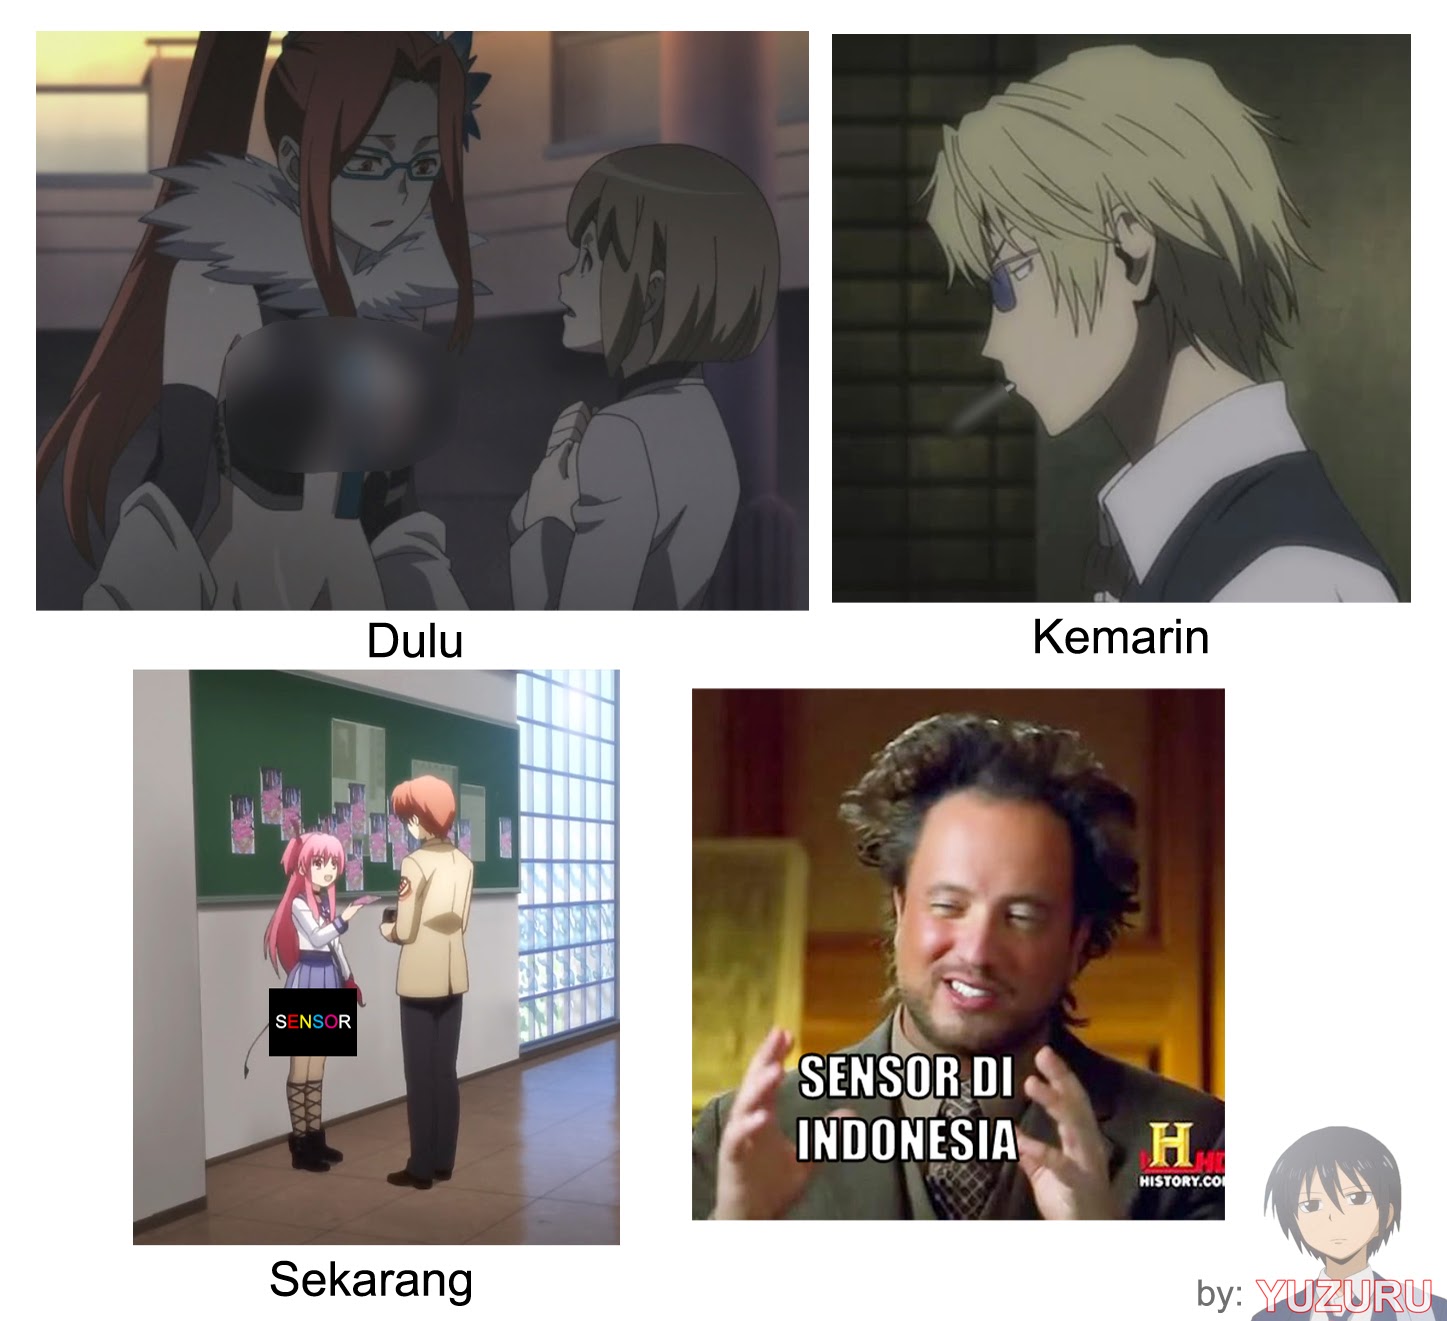 Meme Buatan Yuzuru Yang Di Repost Oleh Meme Anime Indonesia